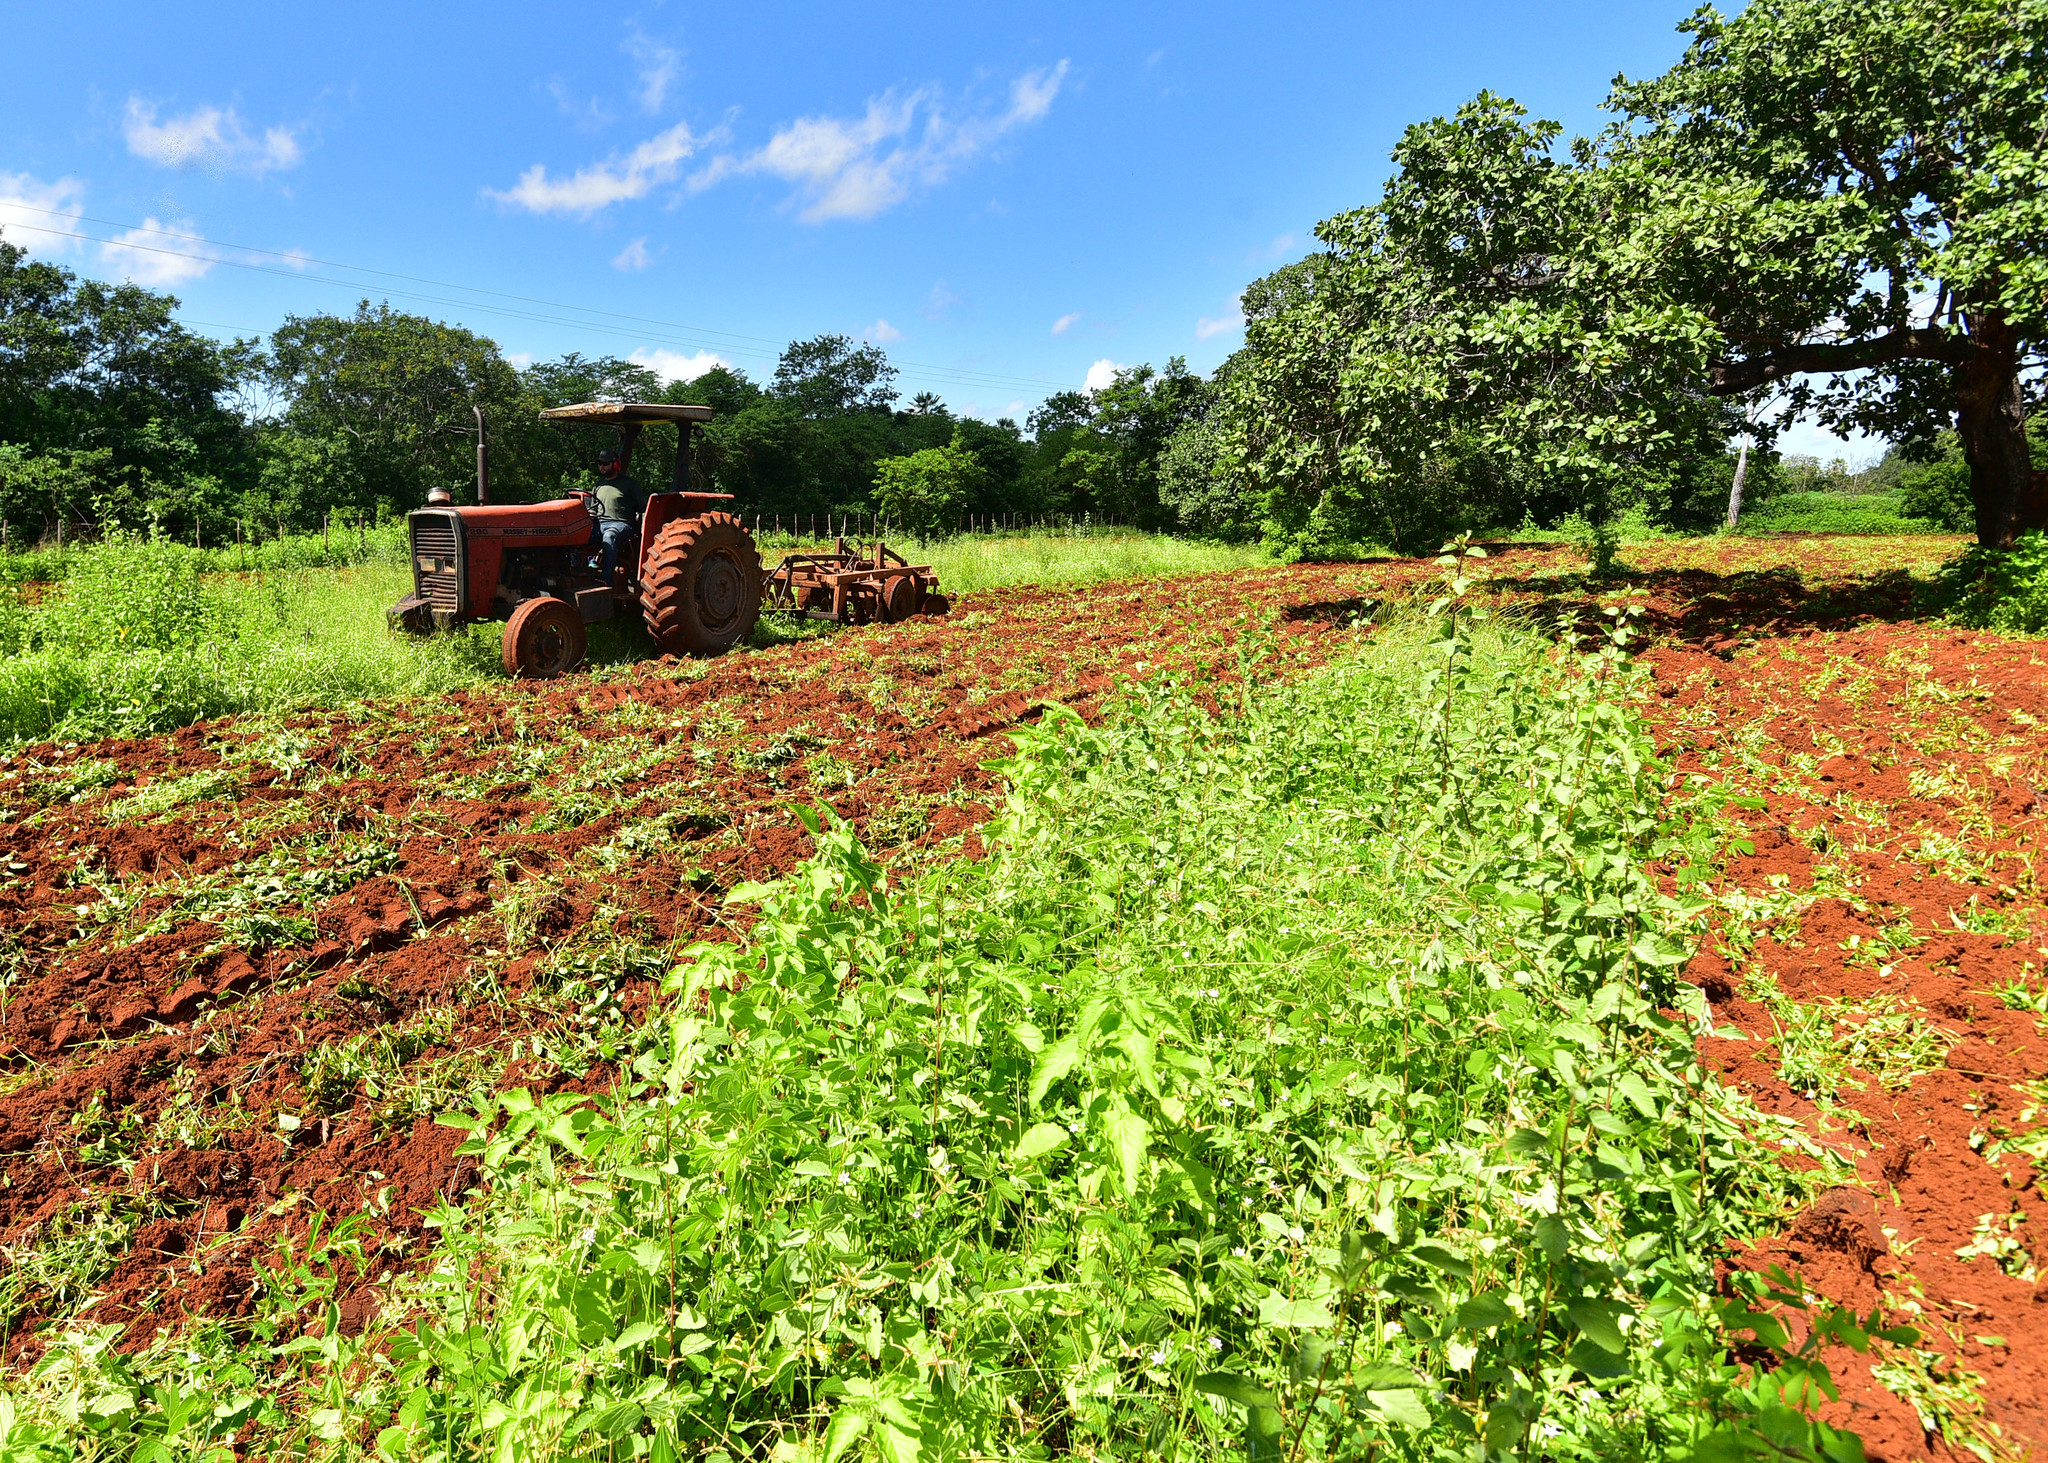 Edição 2023 do programa “Semear” entra na reta final beneficiando mais de 4,2 mil agricultores mossoroenses